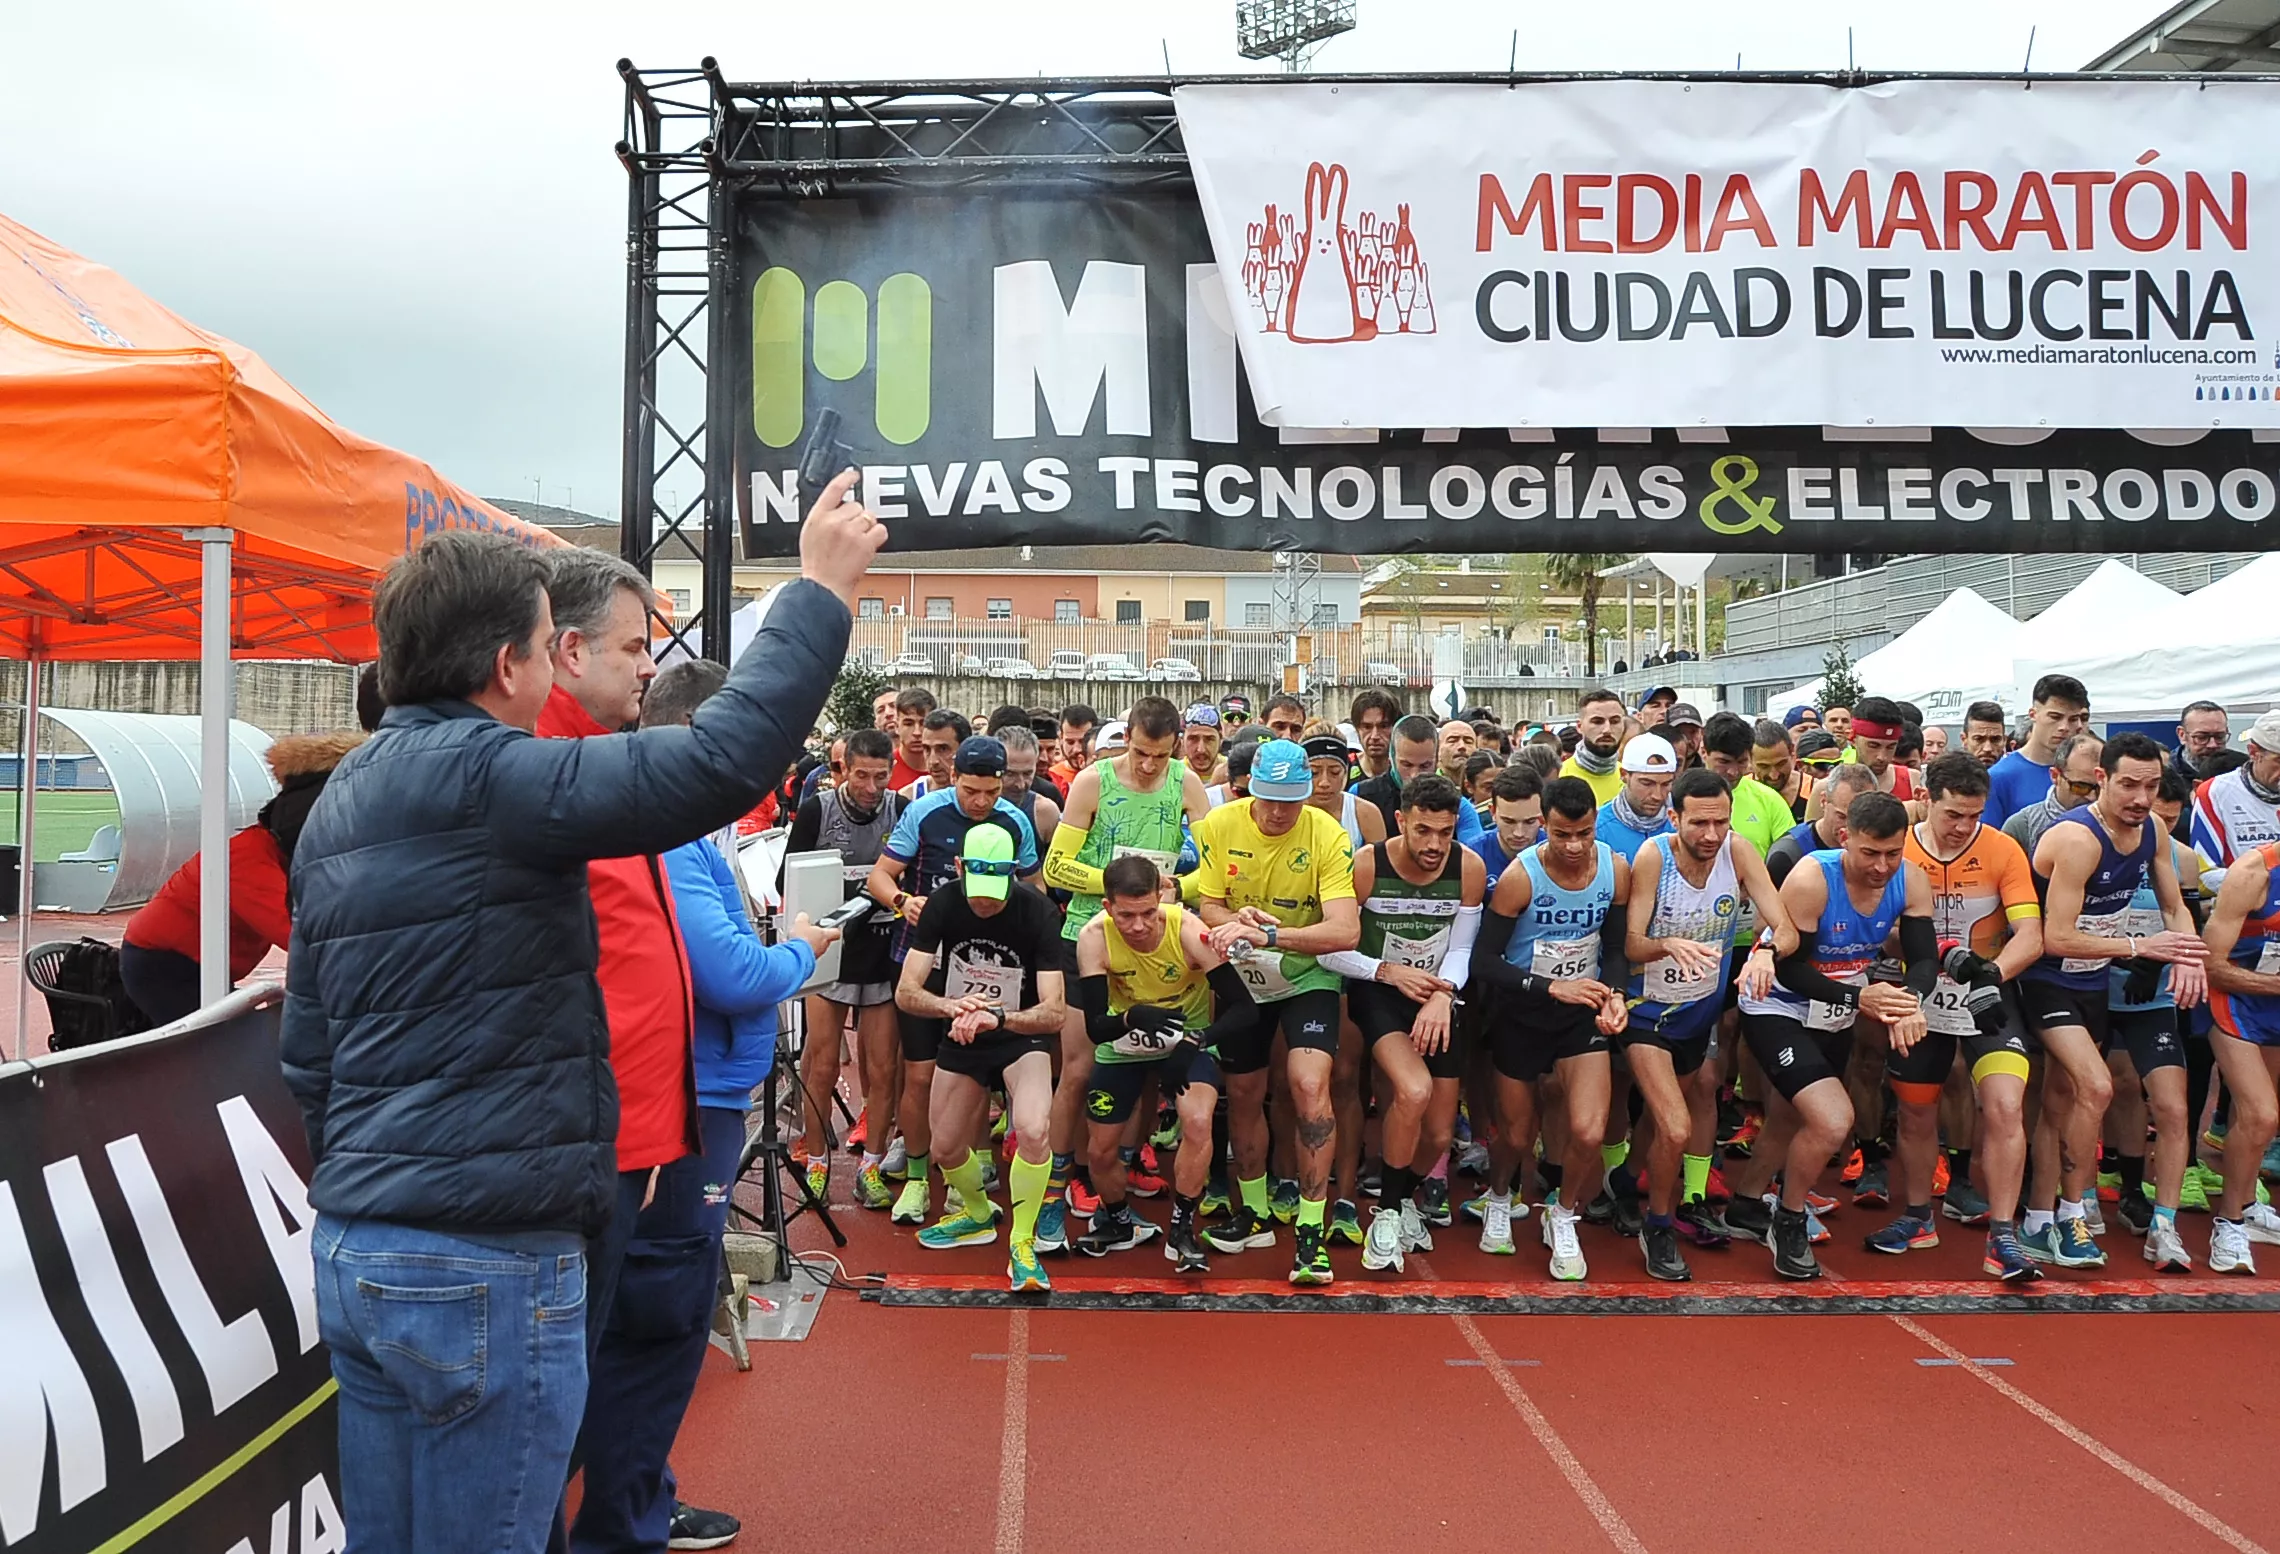 X Media Maratón Ciudad de Lucena